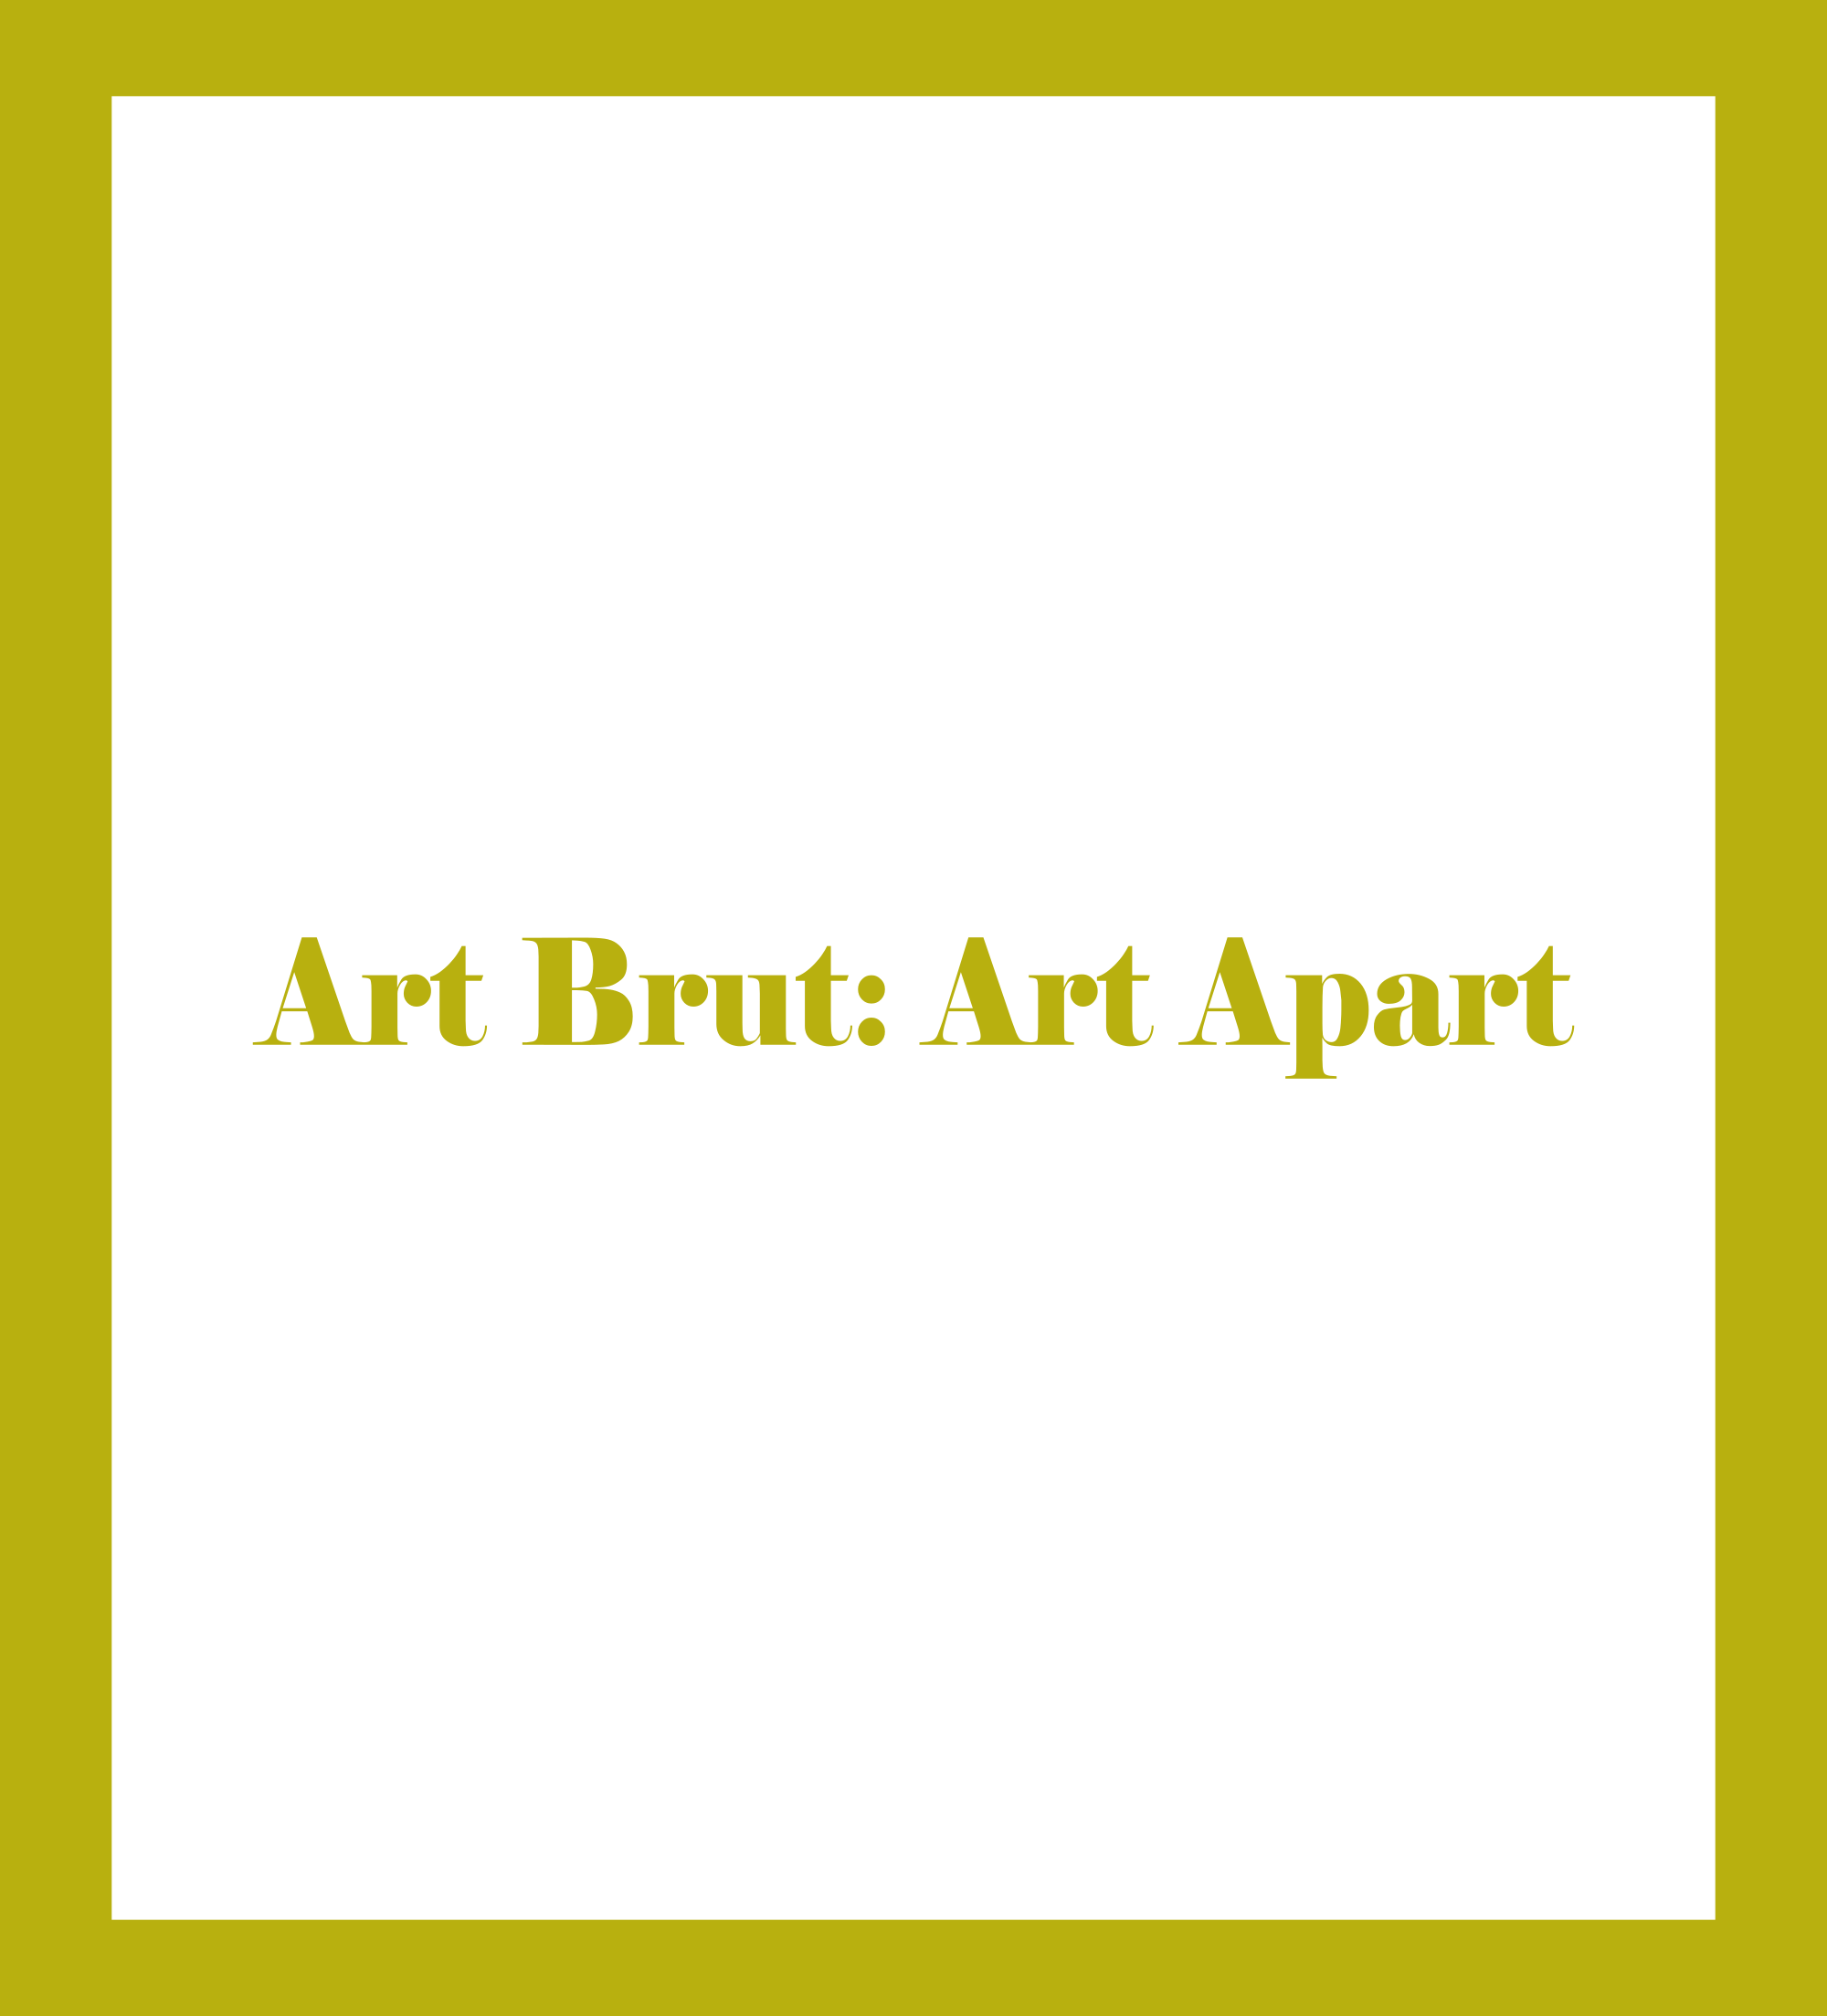 Caratula de Art Brut: Art Apart (Arte bruto: arte aparte) 